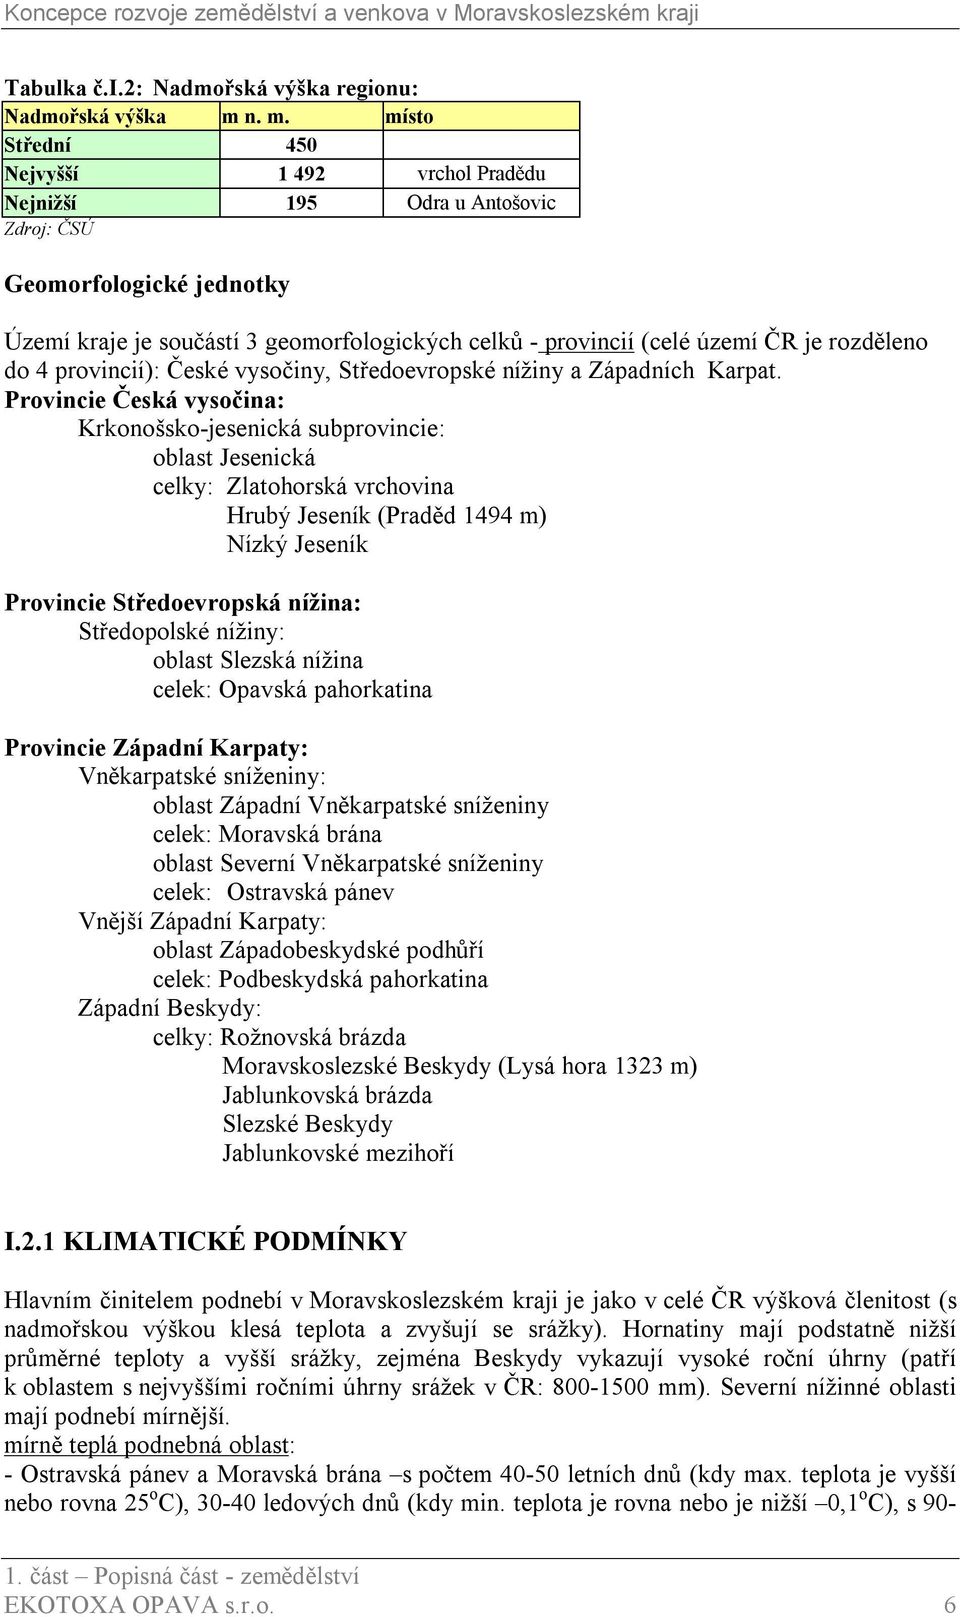 1. část Popisná část - zemědělství EKOTOXA OPAVA s.r.o. 1 - PDF Stažení  zdarma